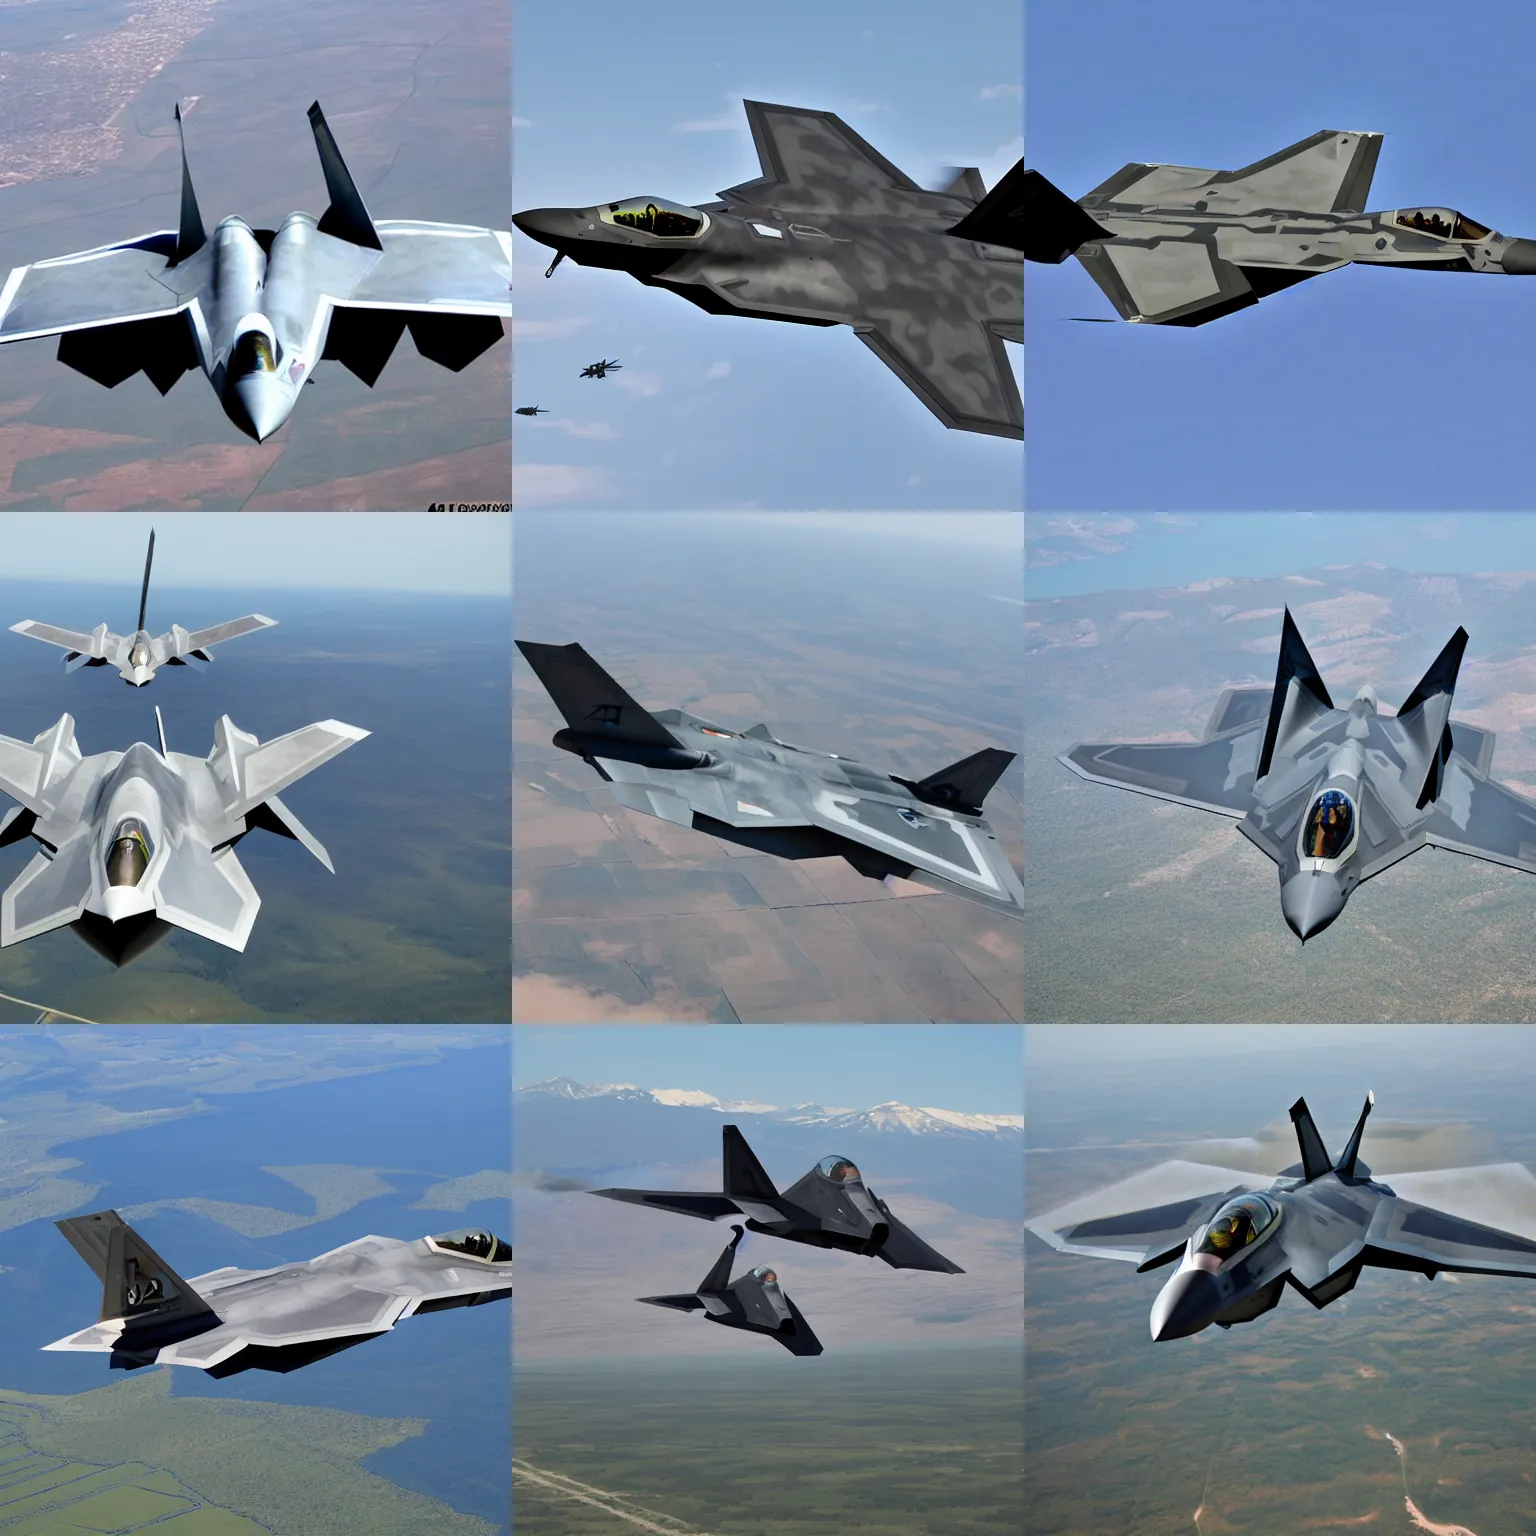 Prompt: f22 raptor, fighter jet, 5th gen fighter, air force